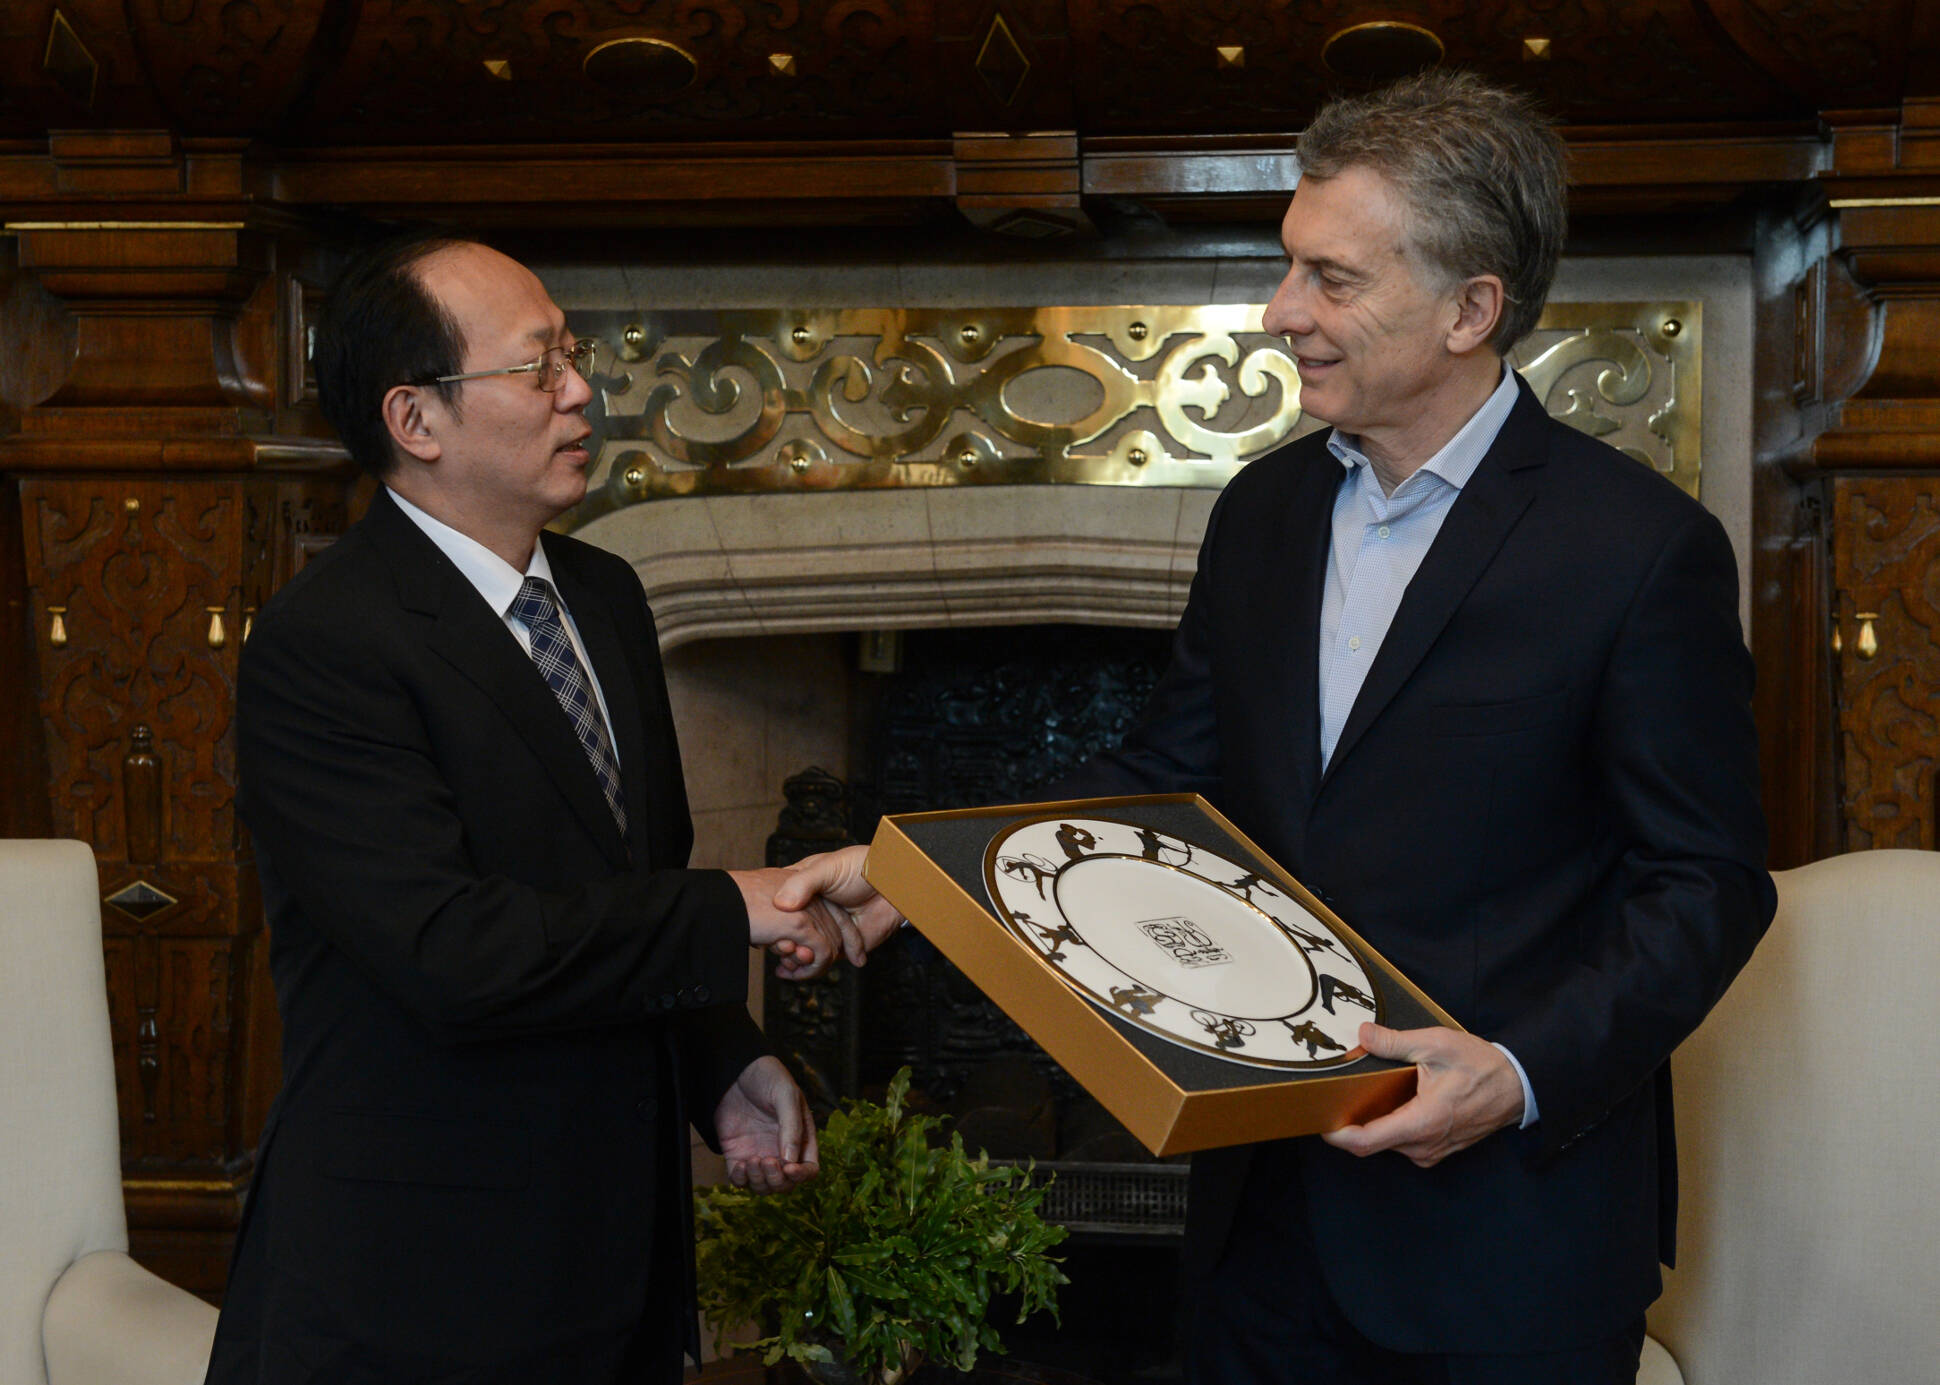 El presidente Macri recibió al titular del Comité Olímpico Chino